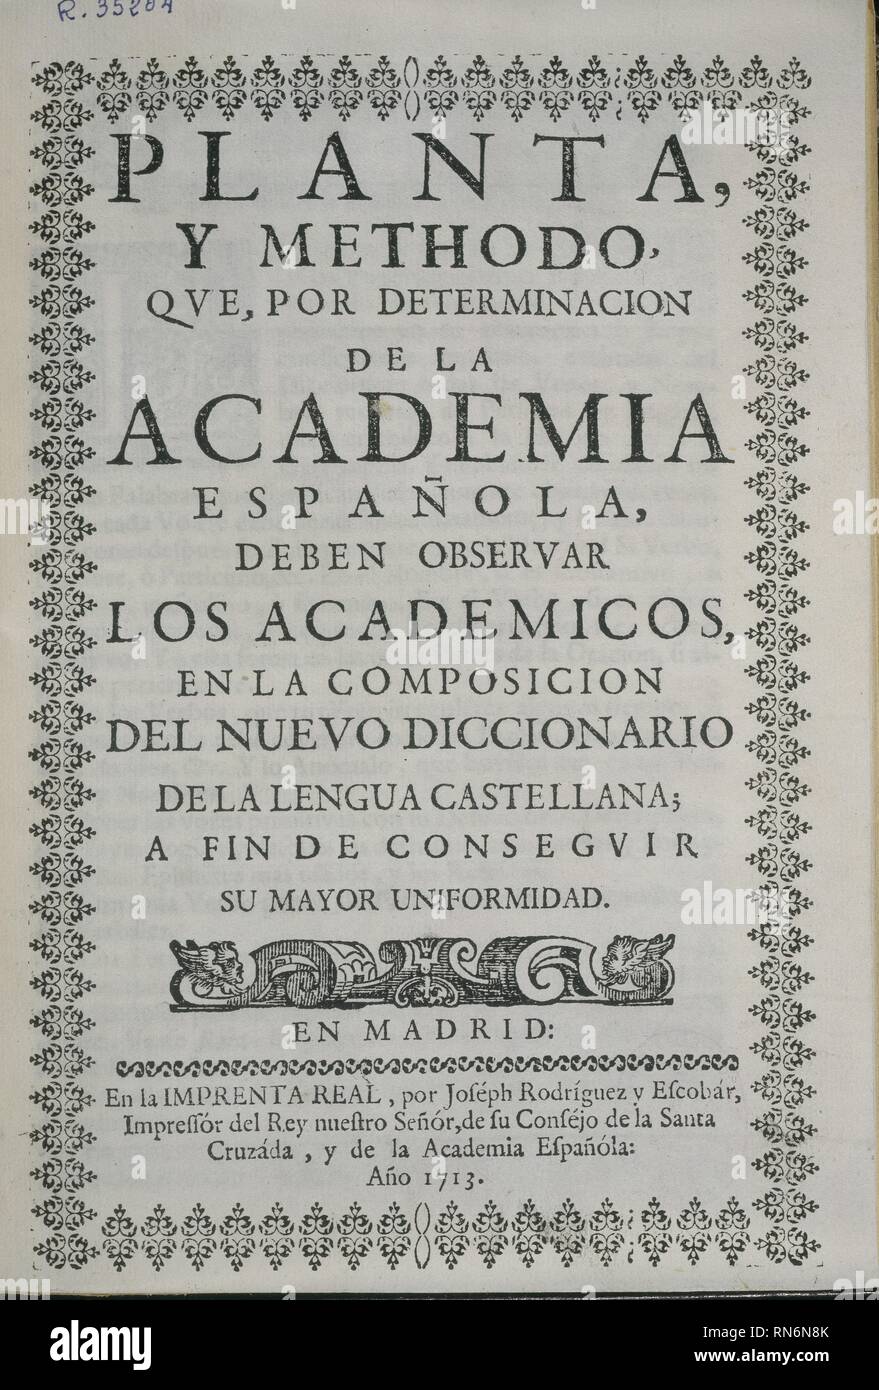 PORTADA DE LA PLANTA Y METODO PARA LA COMPOSICION DEL NUEVO DICCIONARIO-  1713. Location: ACADEMIA DE LA LENGUA-COLECCION. MADRID. SPAIN Stock Photo  - Alamy